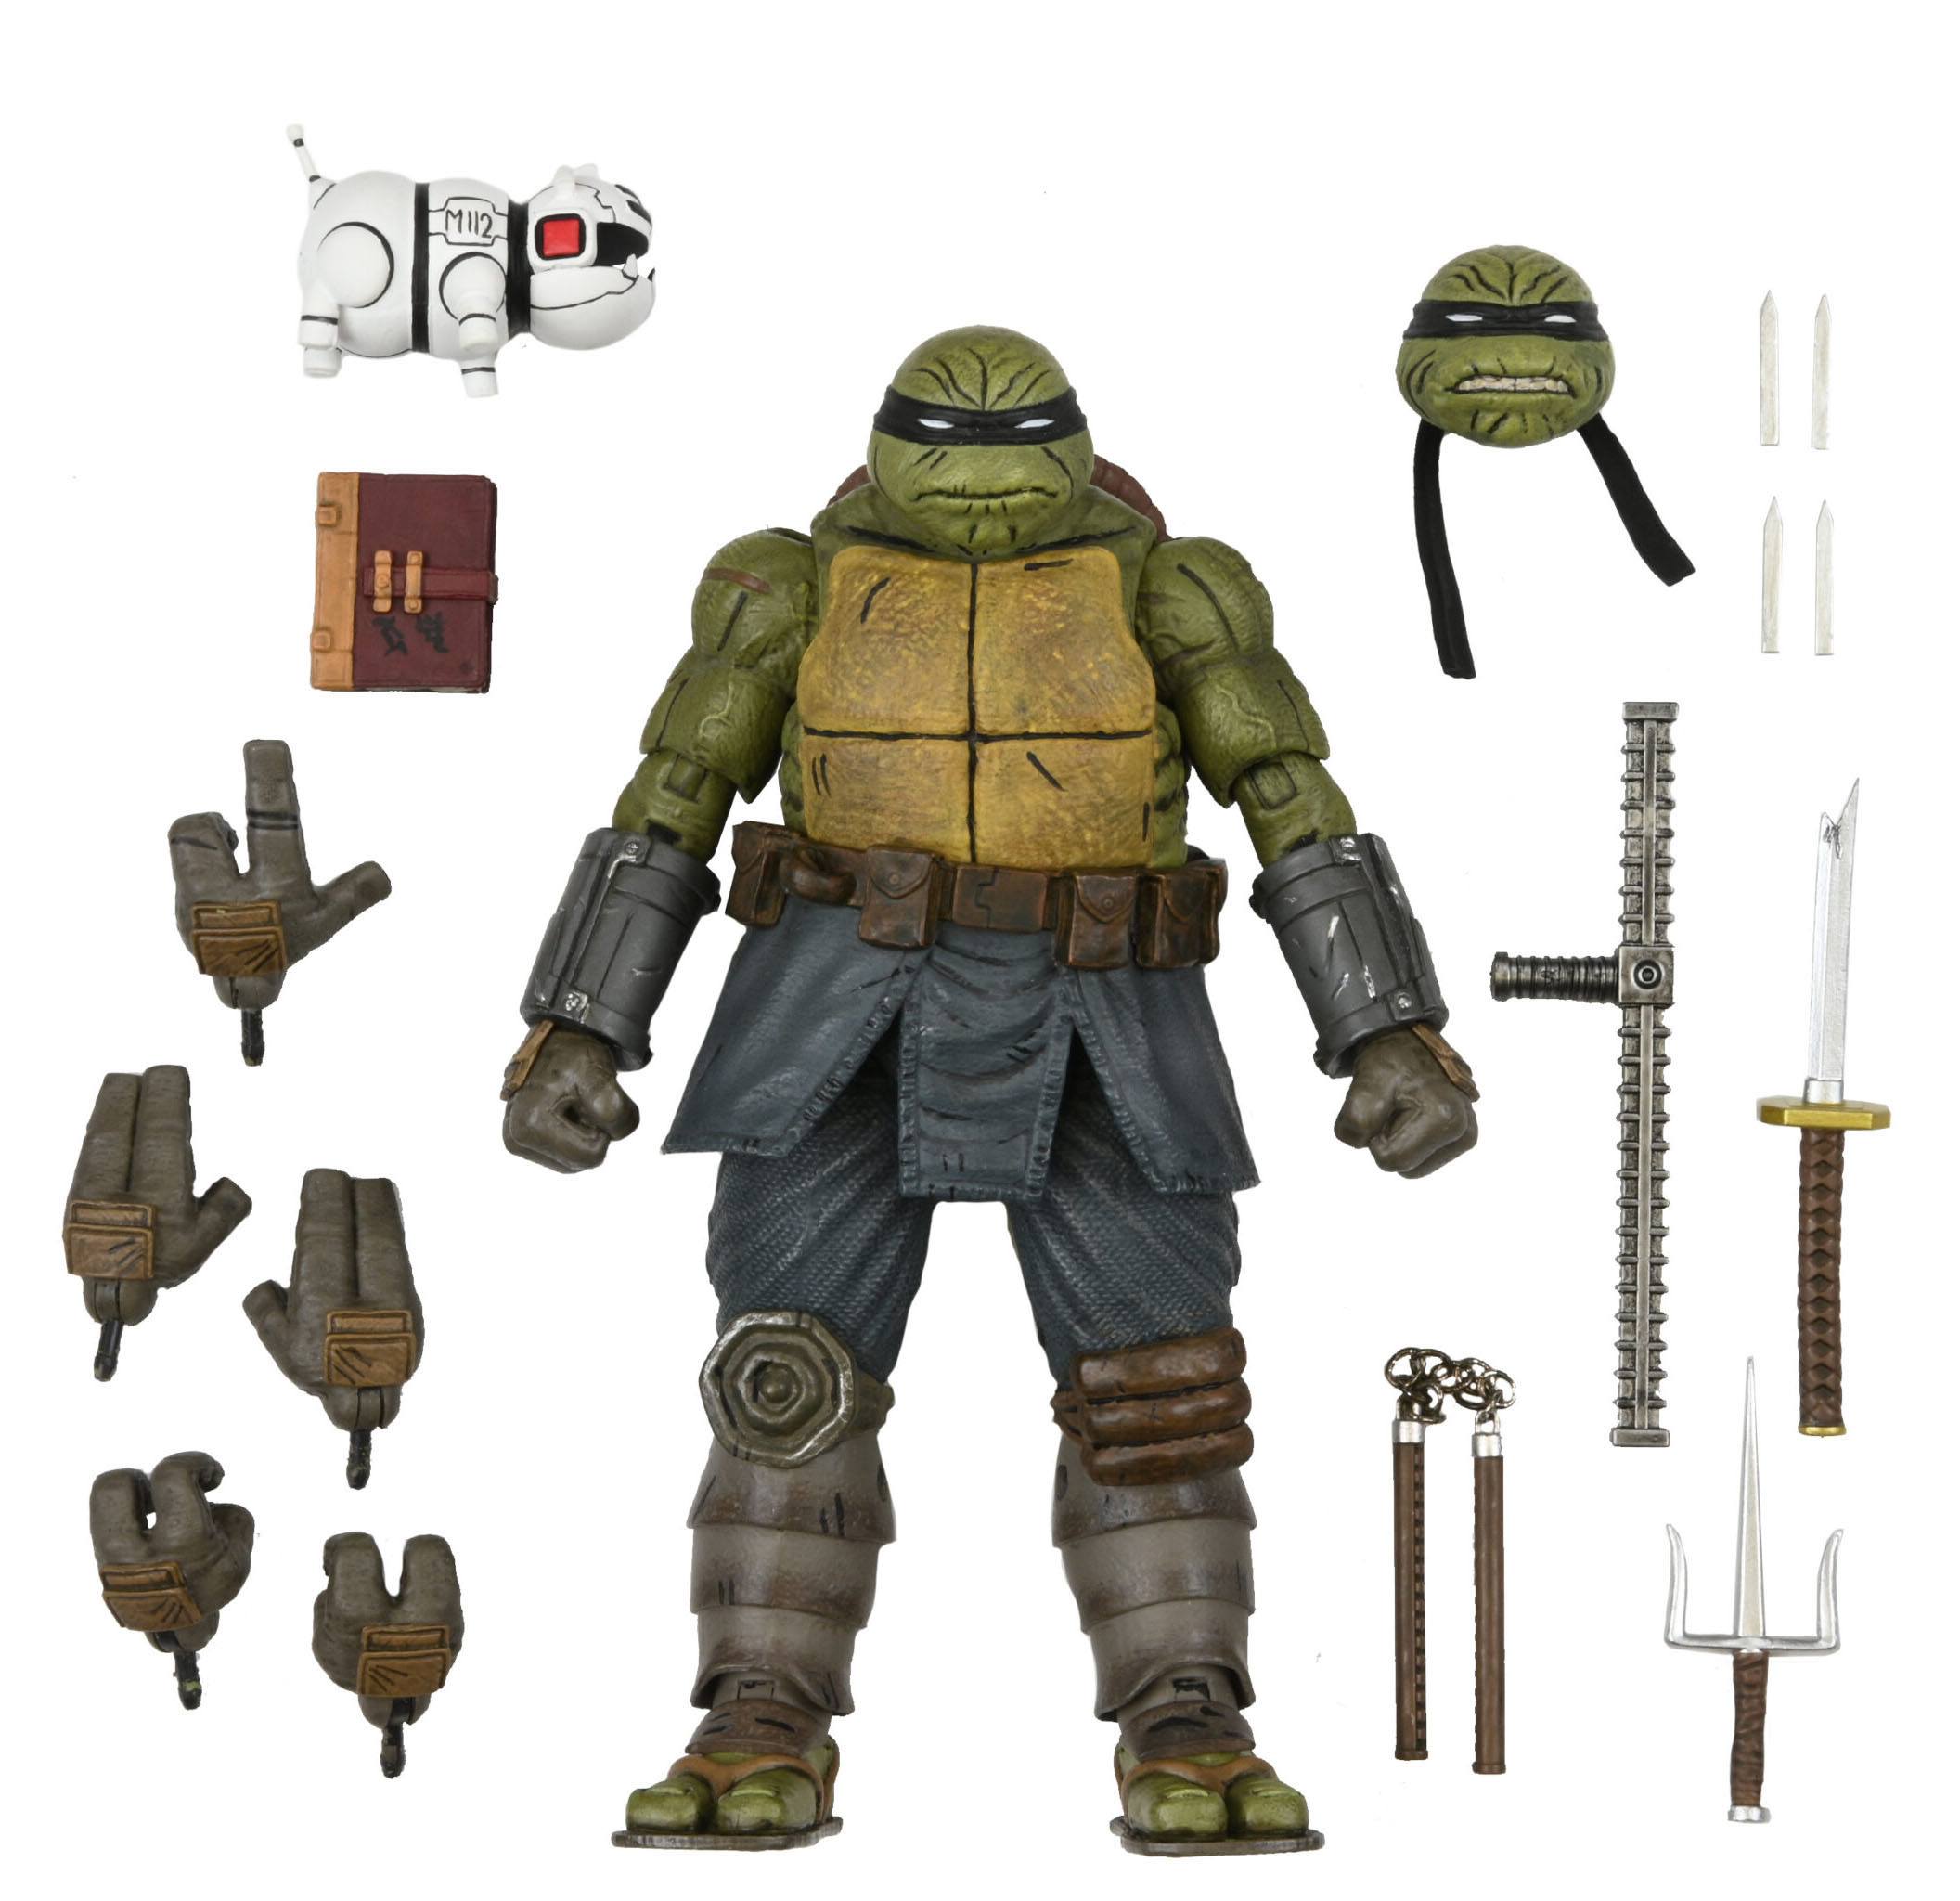 Teenage Mutant Ninja Turtles (IDW Comics) Actionfigur Ultimate The Last Ronin (Unarmored) 18 cm NECA54269 634482542699